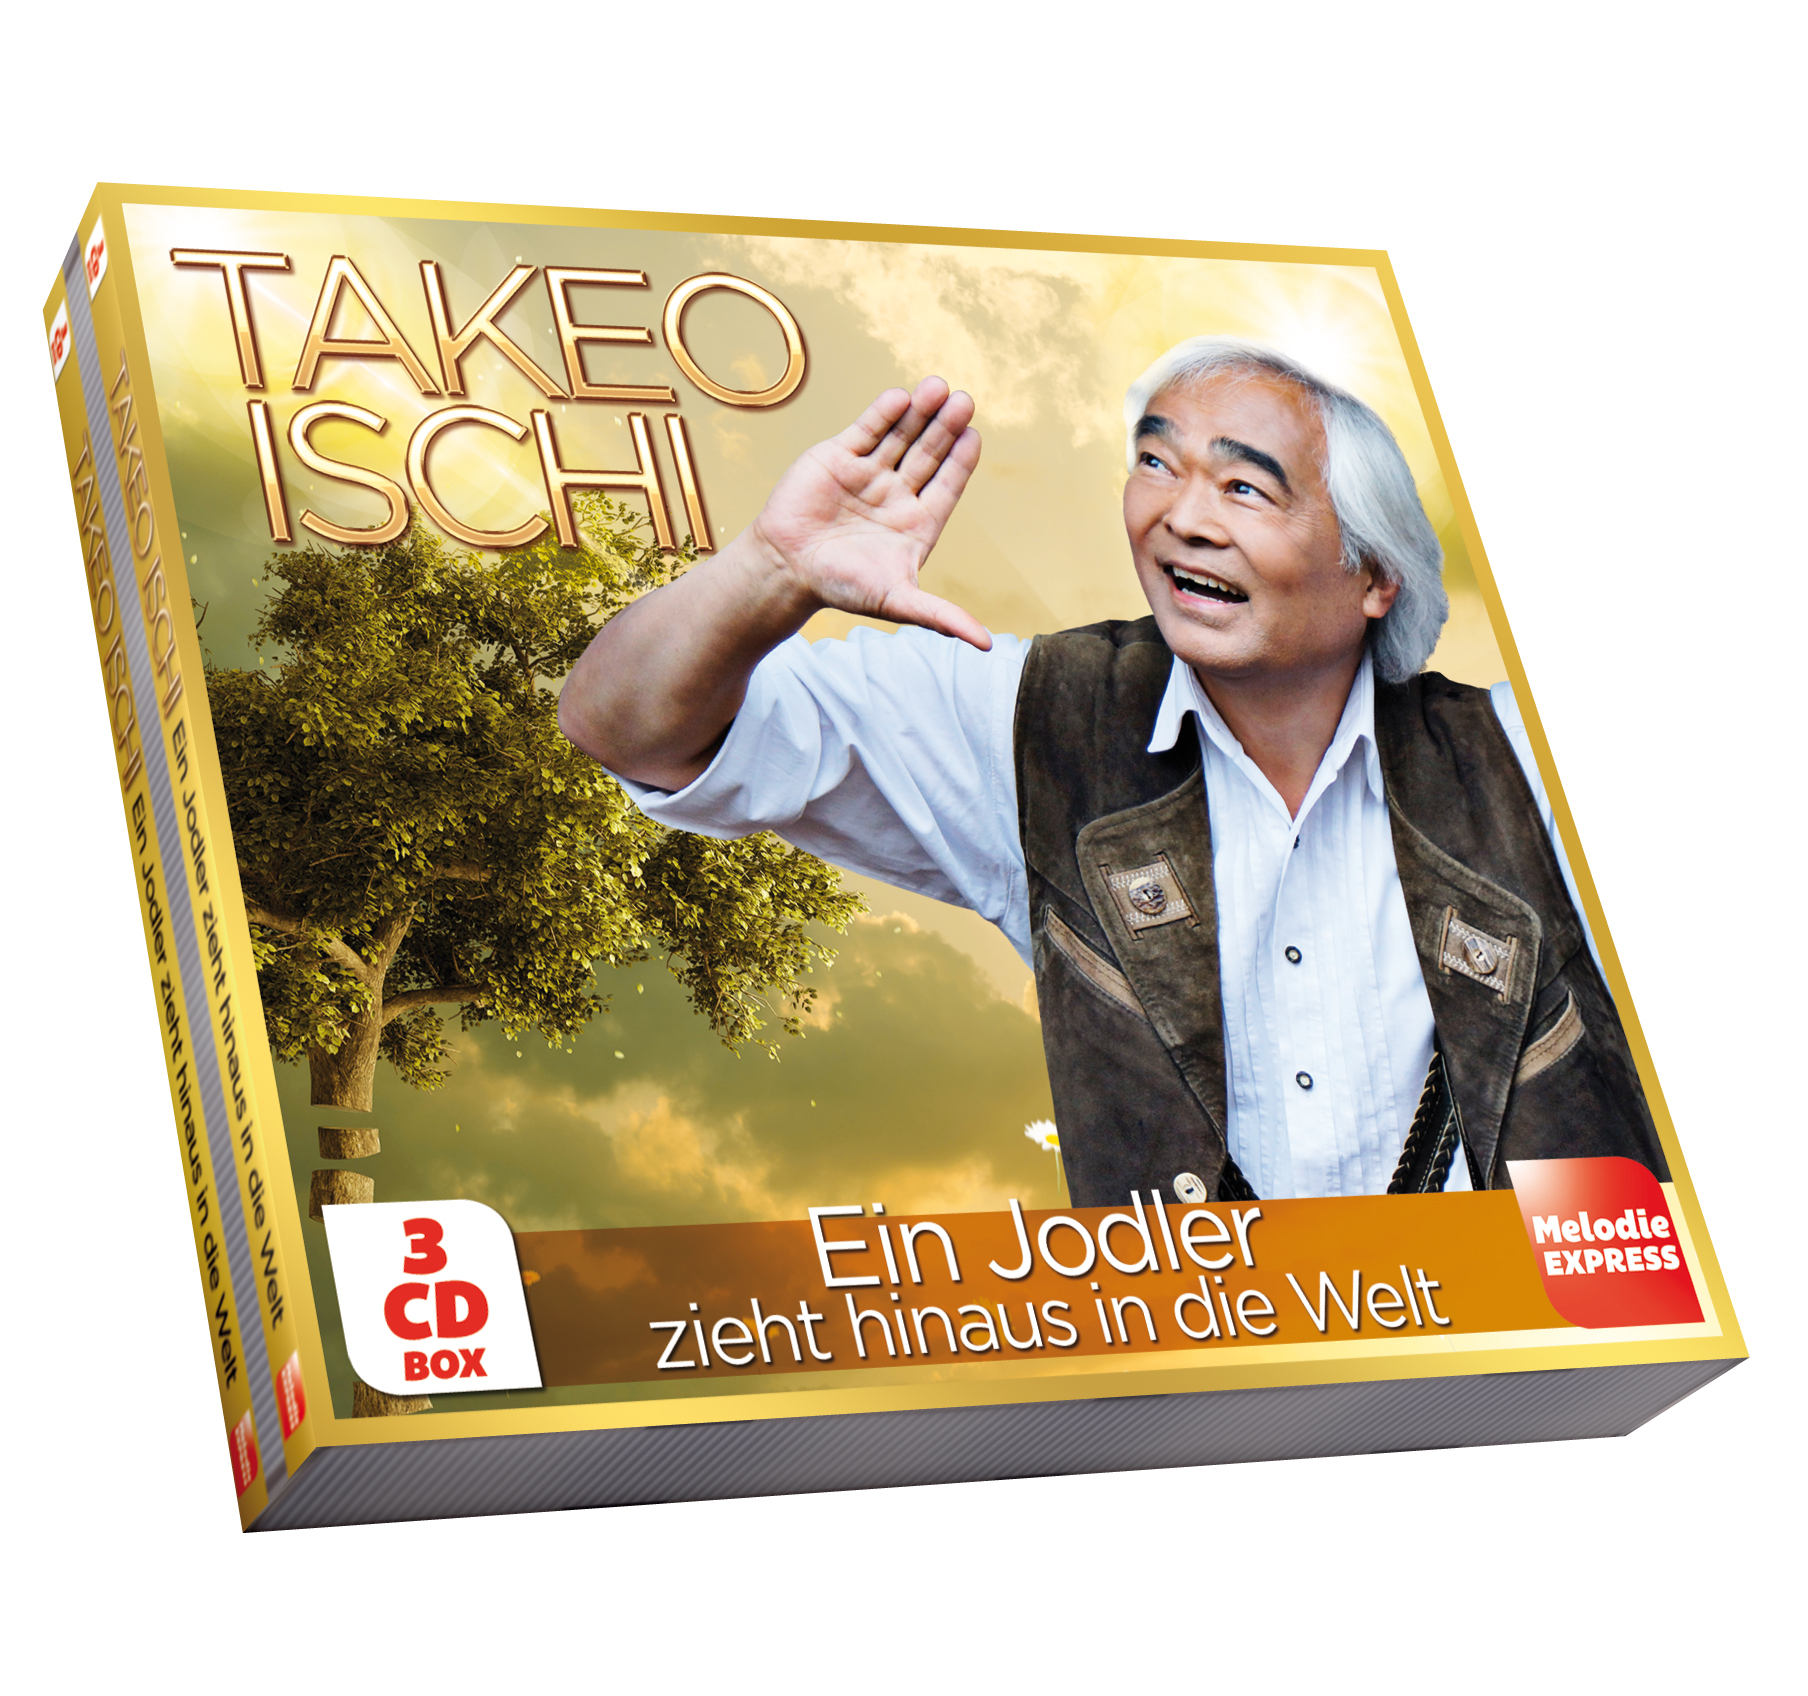 Takeo Ischi - Ein Jodler zieht hinaus in die Welt (3-CD-Box)